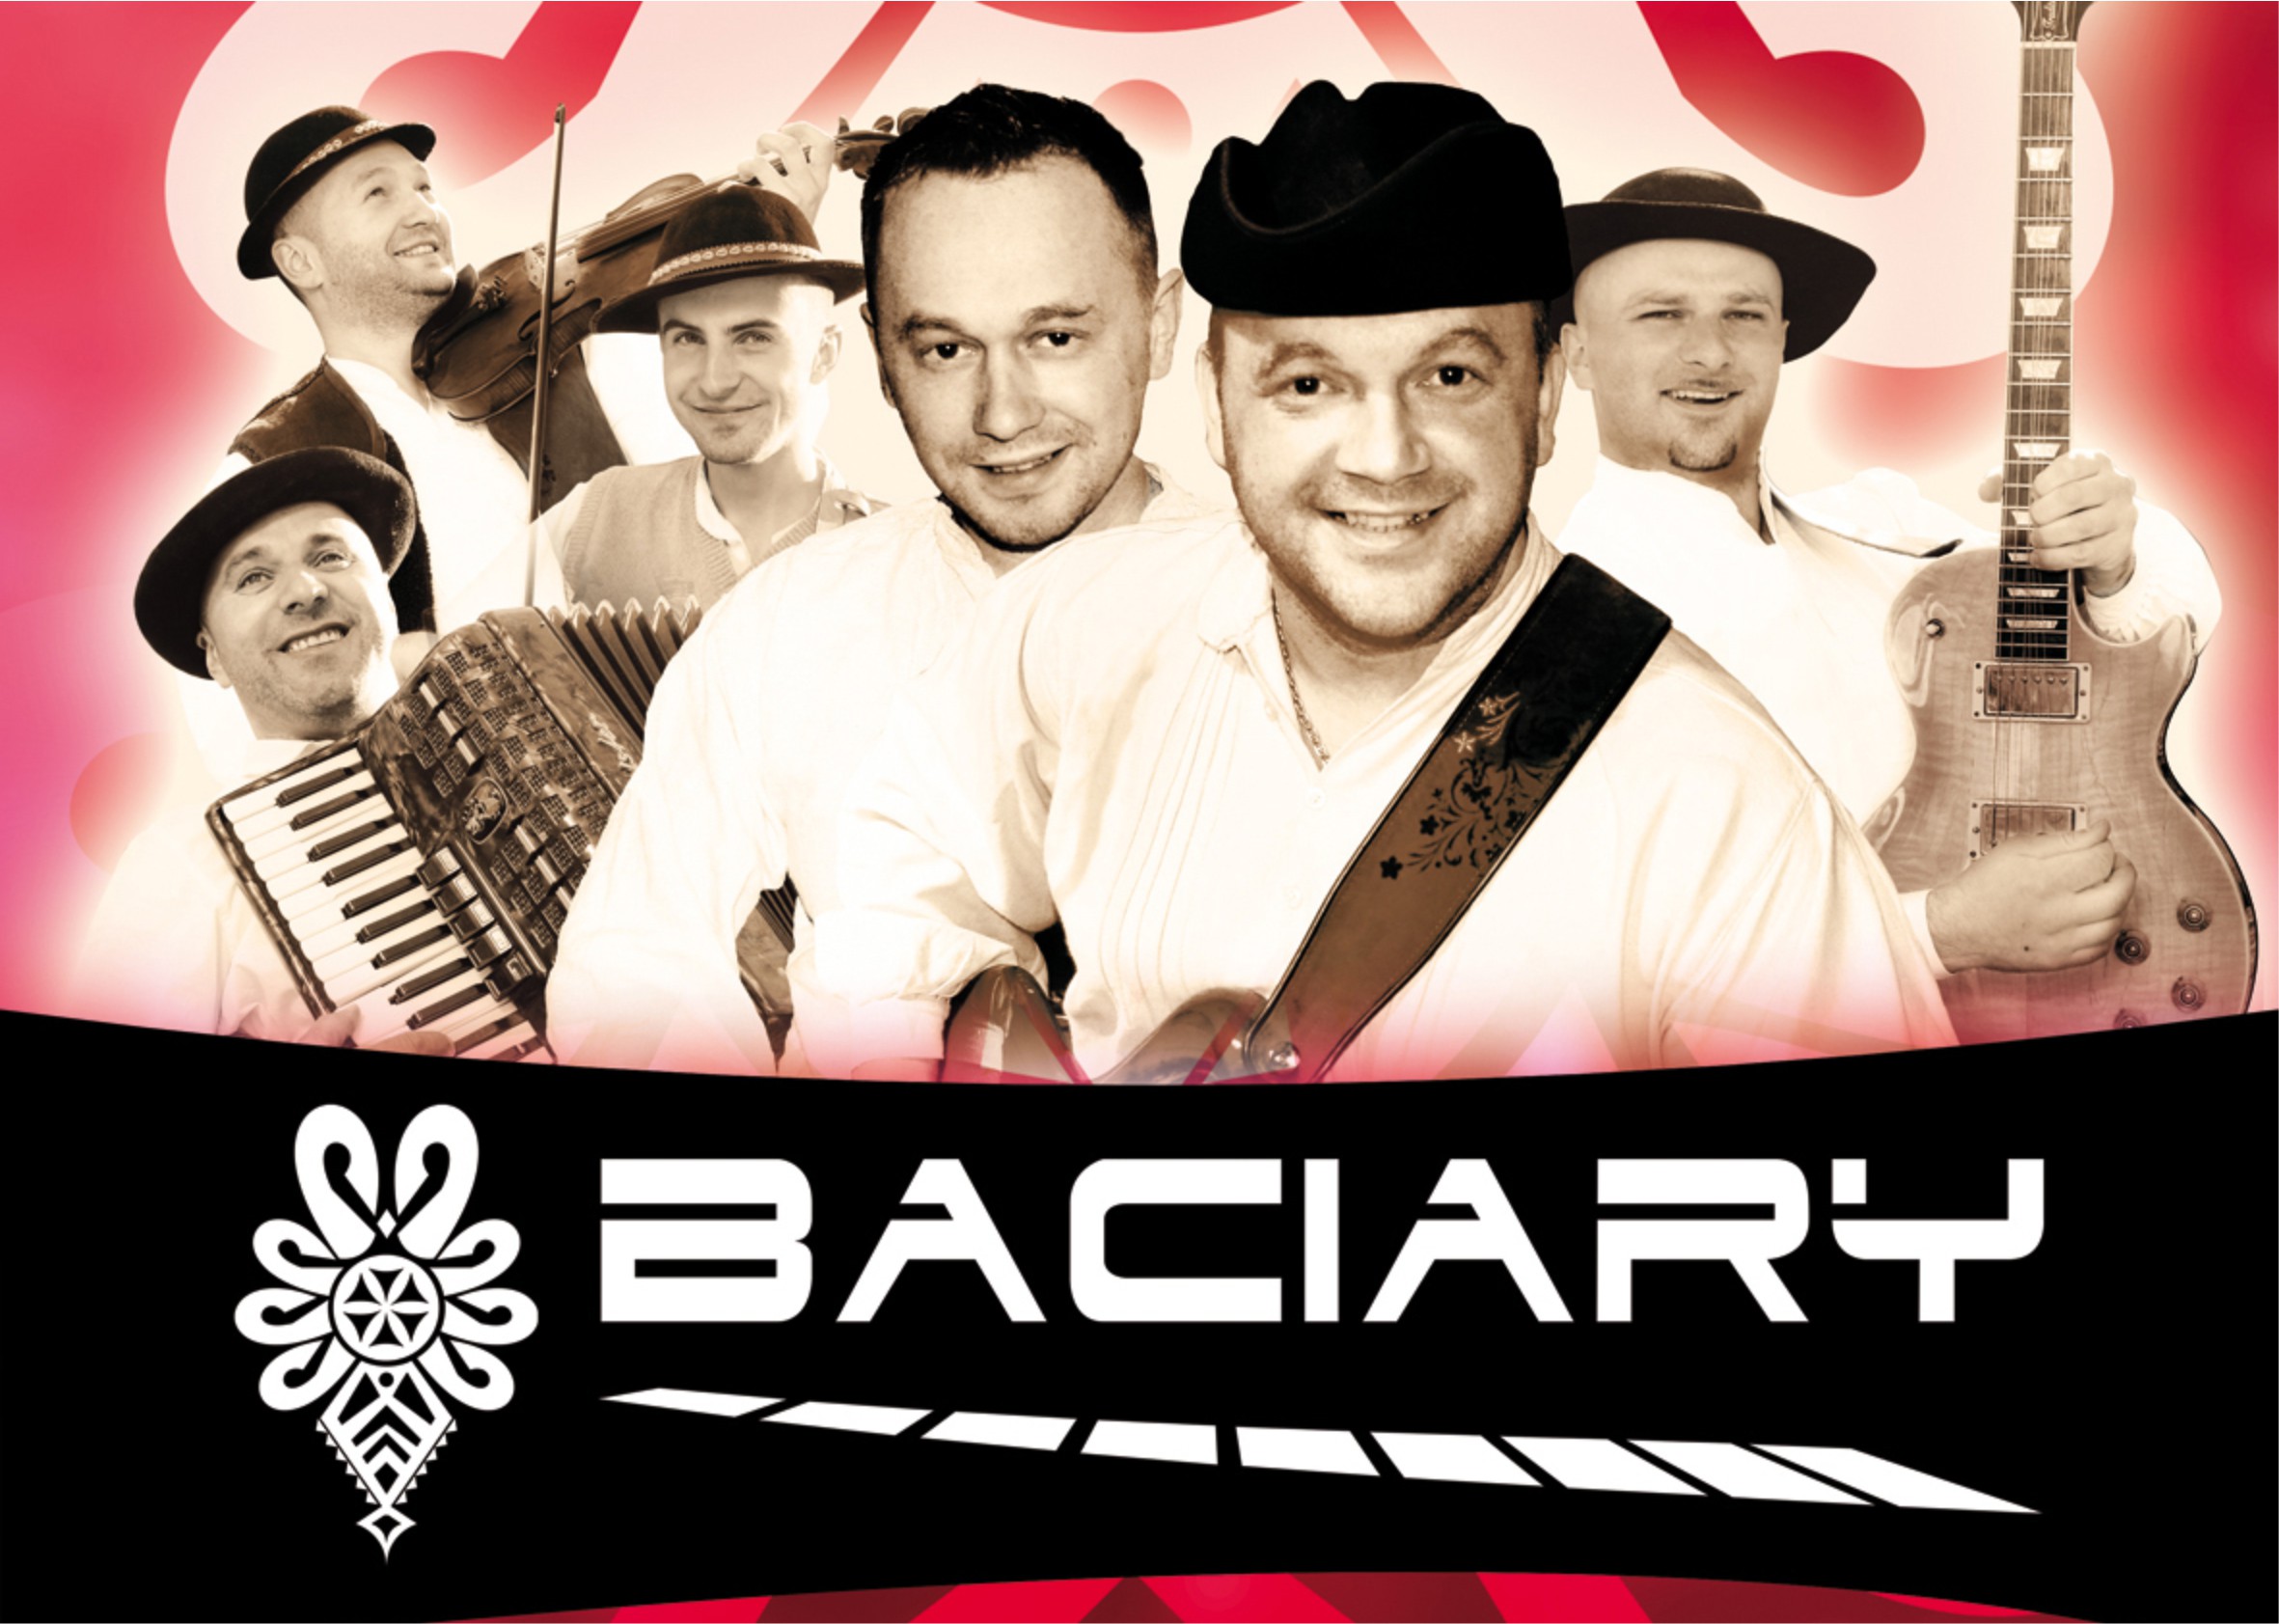 czerwony baner promujący koncert zespołu Baciary z portretami wykonawców